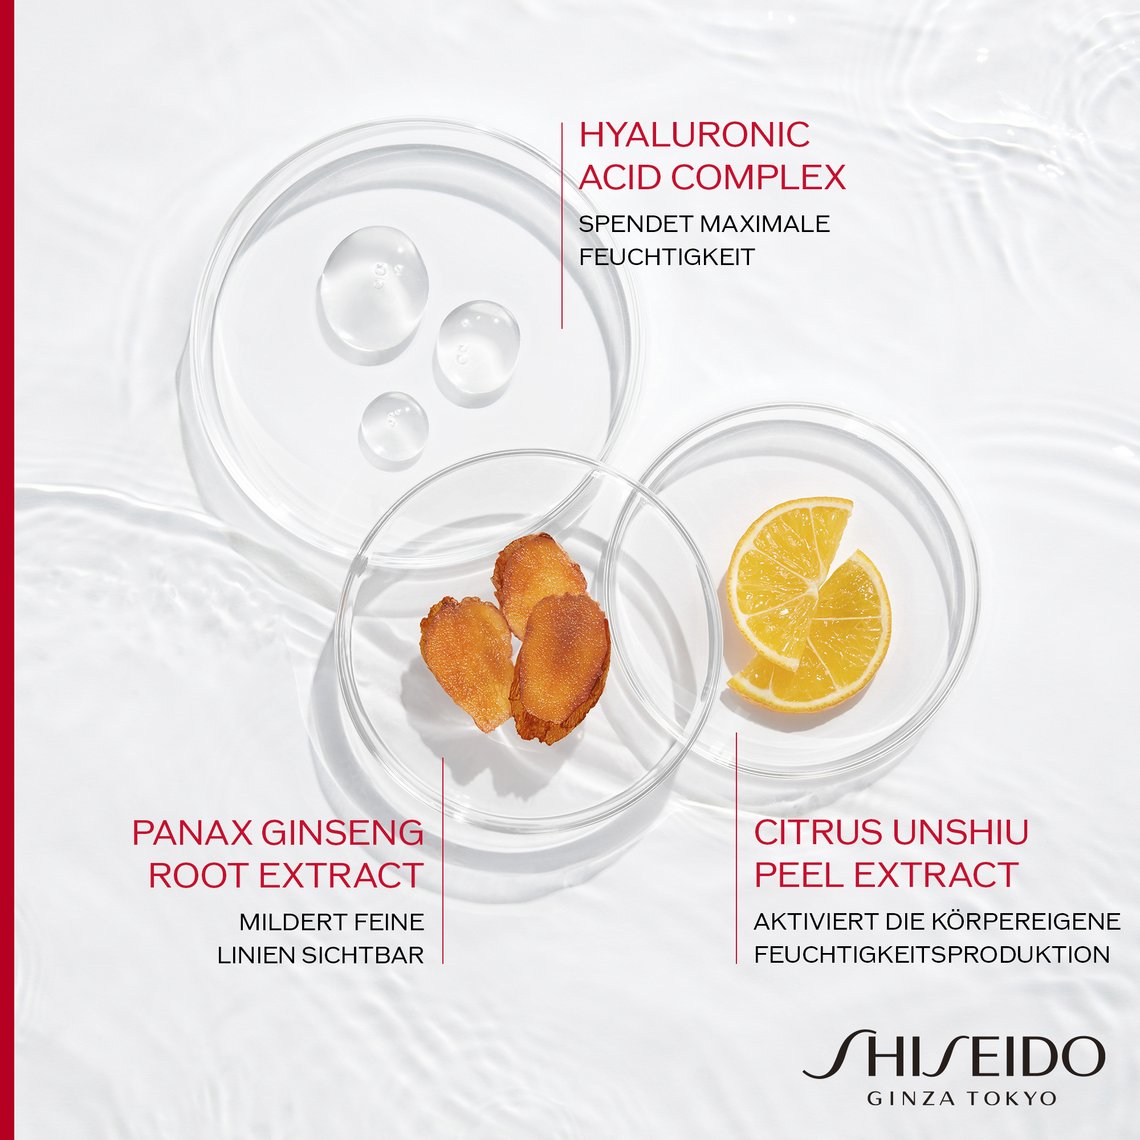 Inhaltsstoffe der Shiseido Feuchtigkeitspflege Essential Energy und Beschreibung ihrer Wirkung